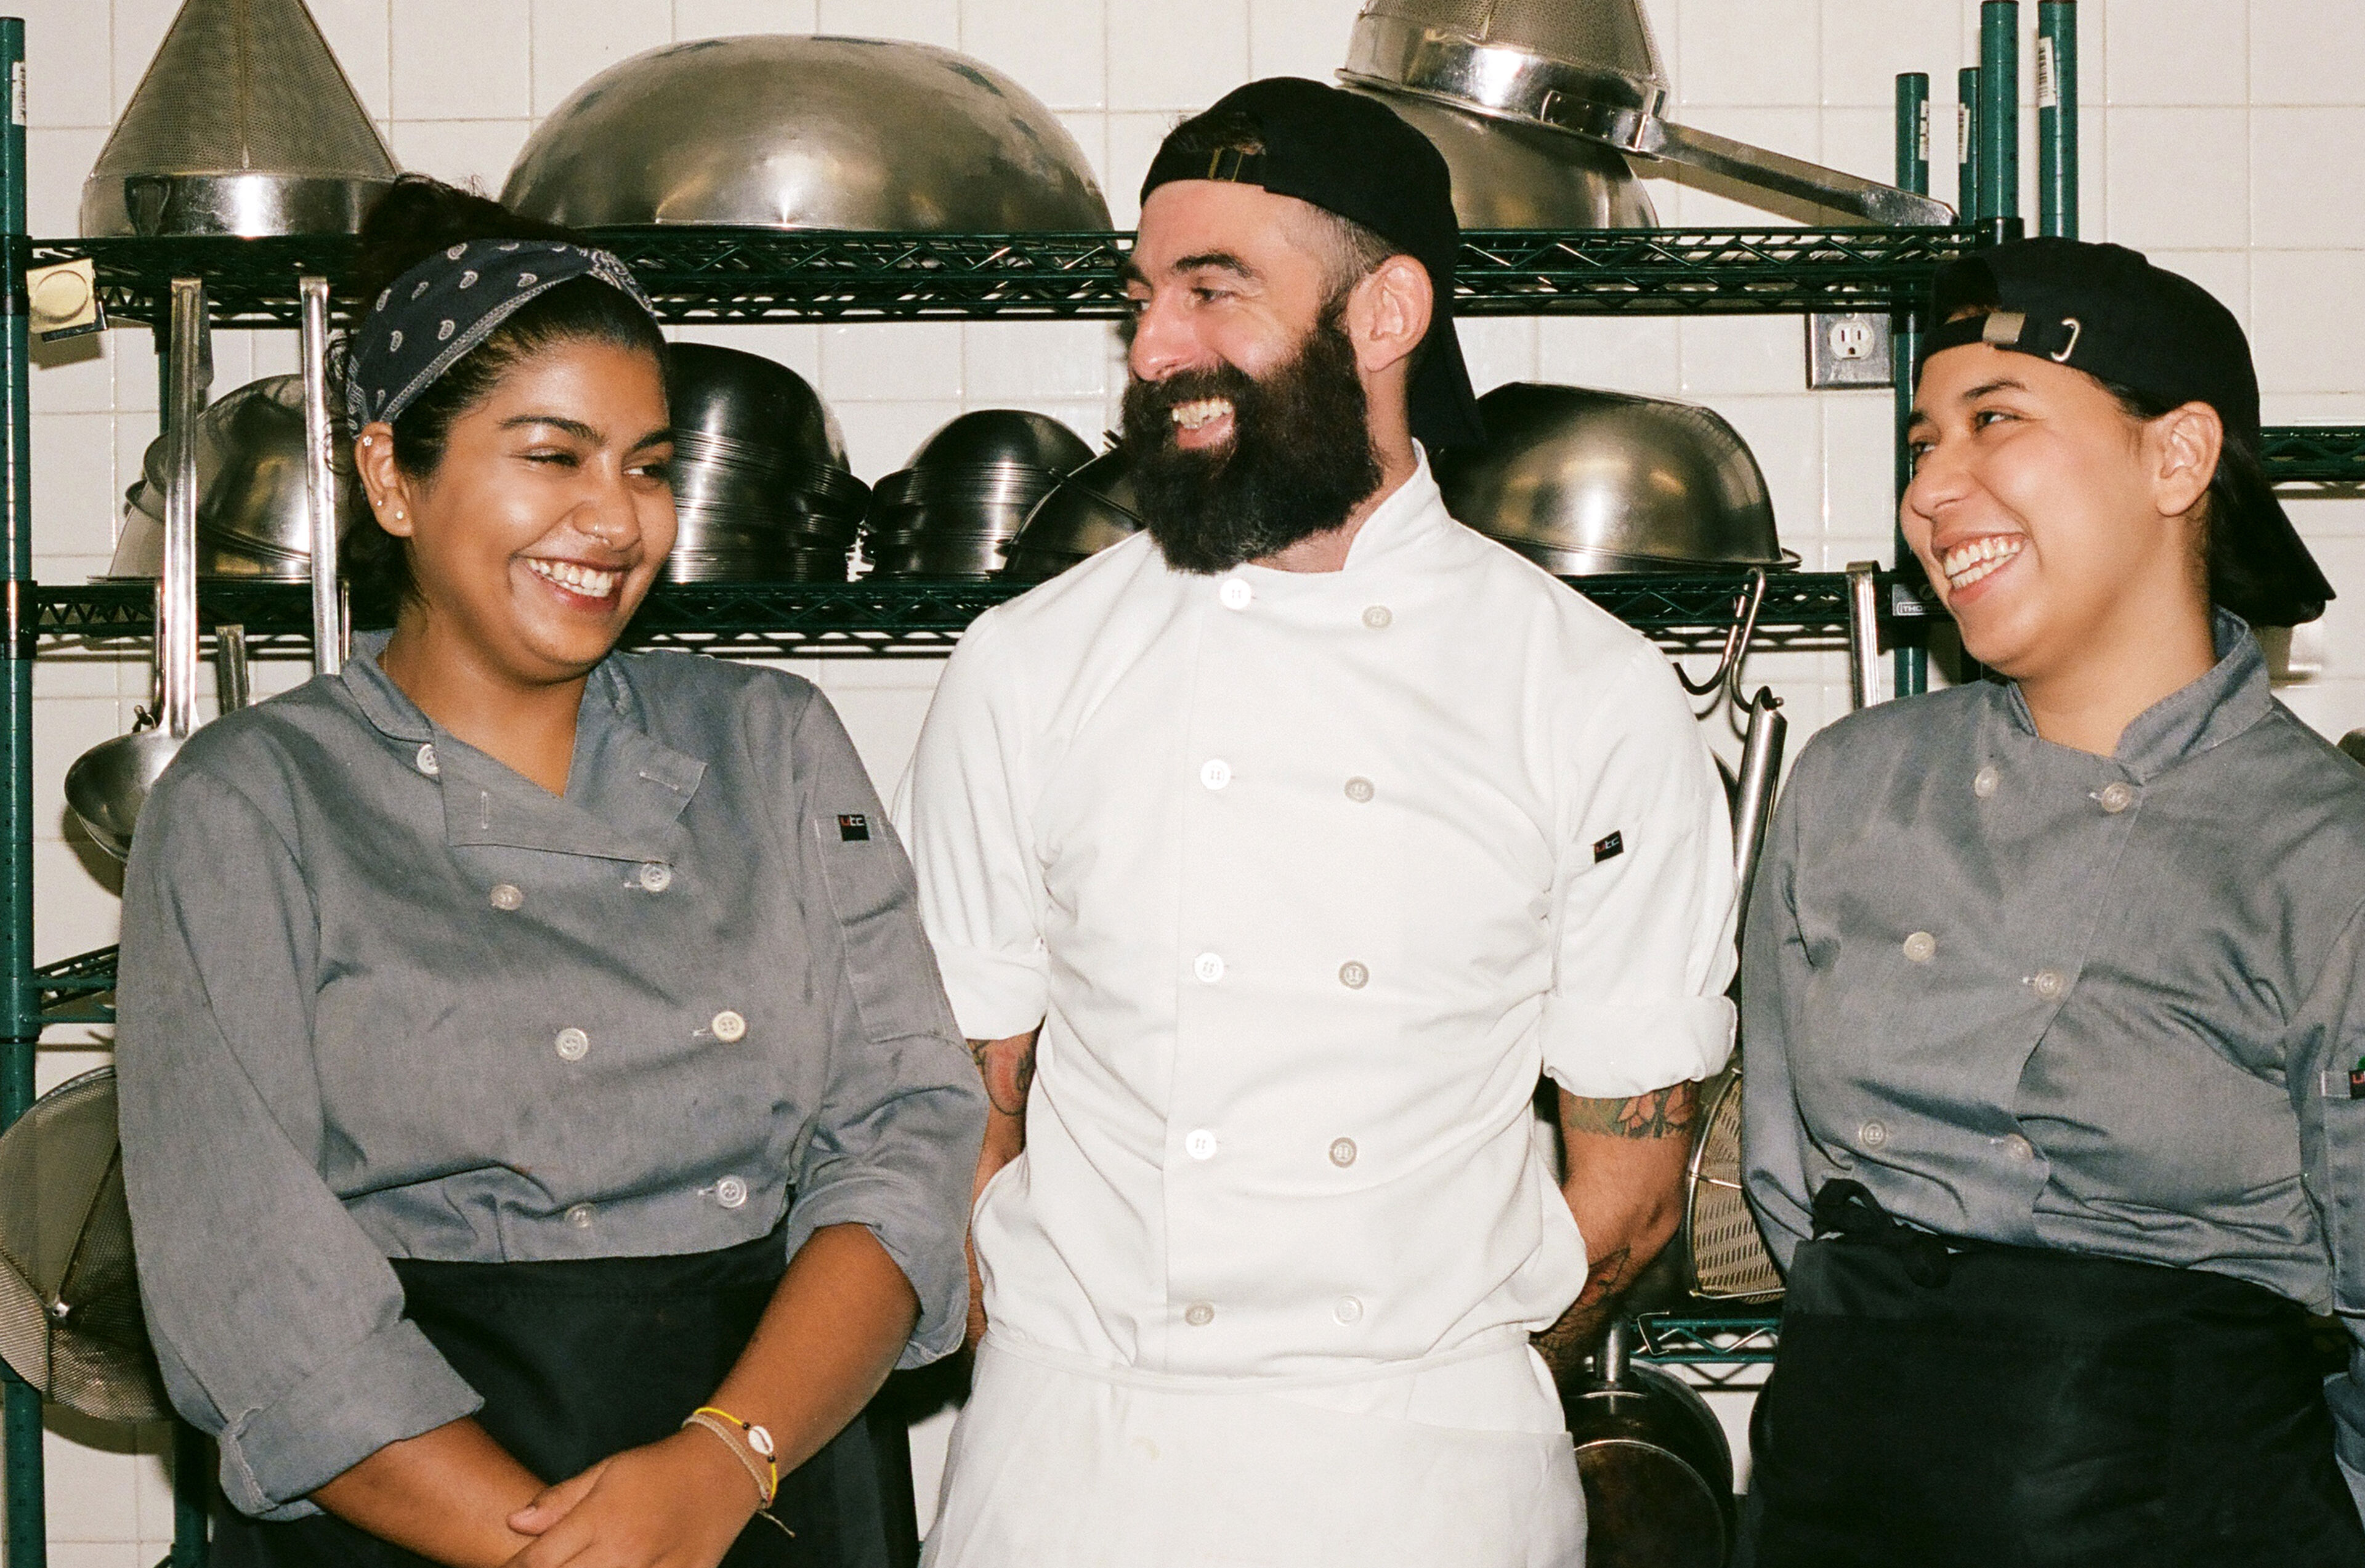 Tres cocineros compartiendo un momento alegre en una cocina comercial concurrida, con ollas de acero inoxidable y estanterías al fondo.